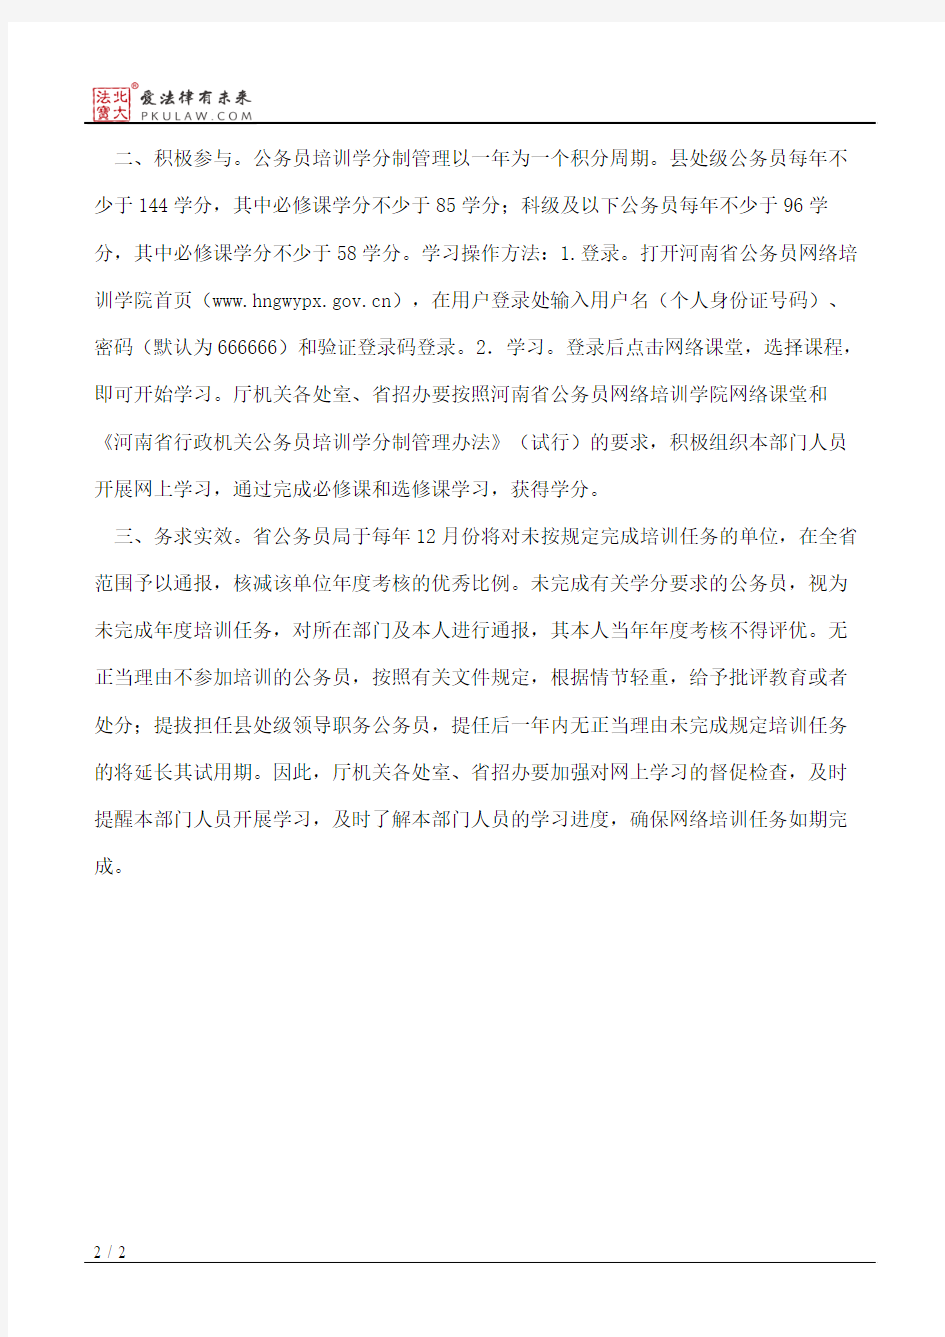 河南省教育厅关于进一步加强公务员网络培训工作的通知